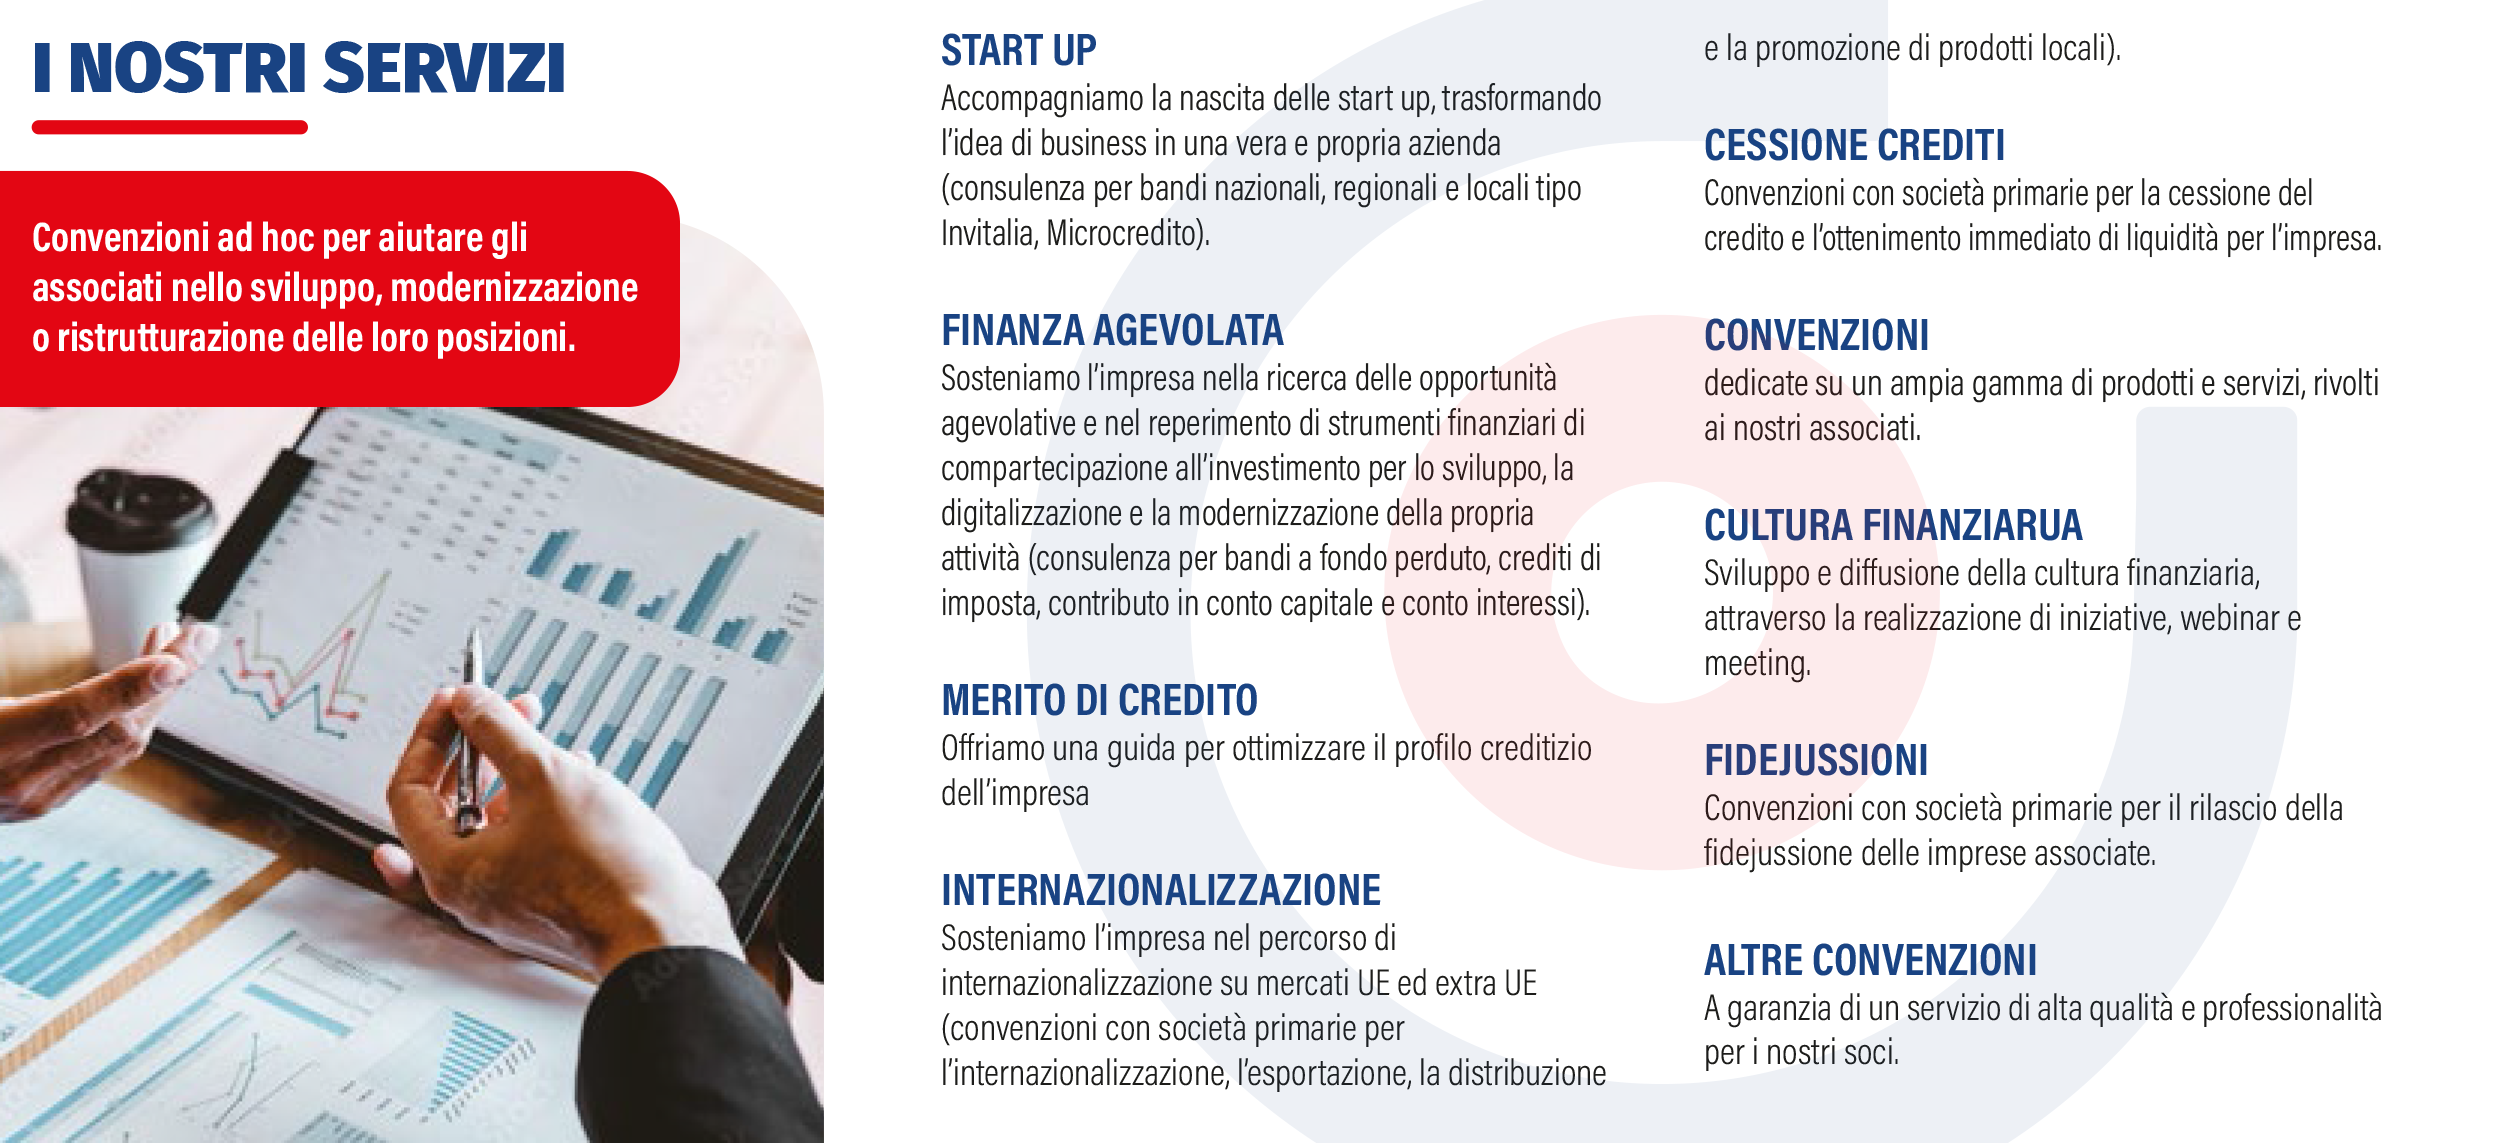 confidi imprese per l'Italia banche finanziamenti i nostri servizi